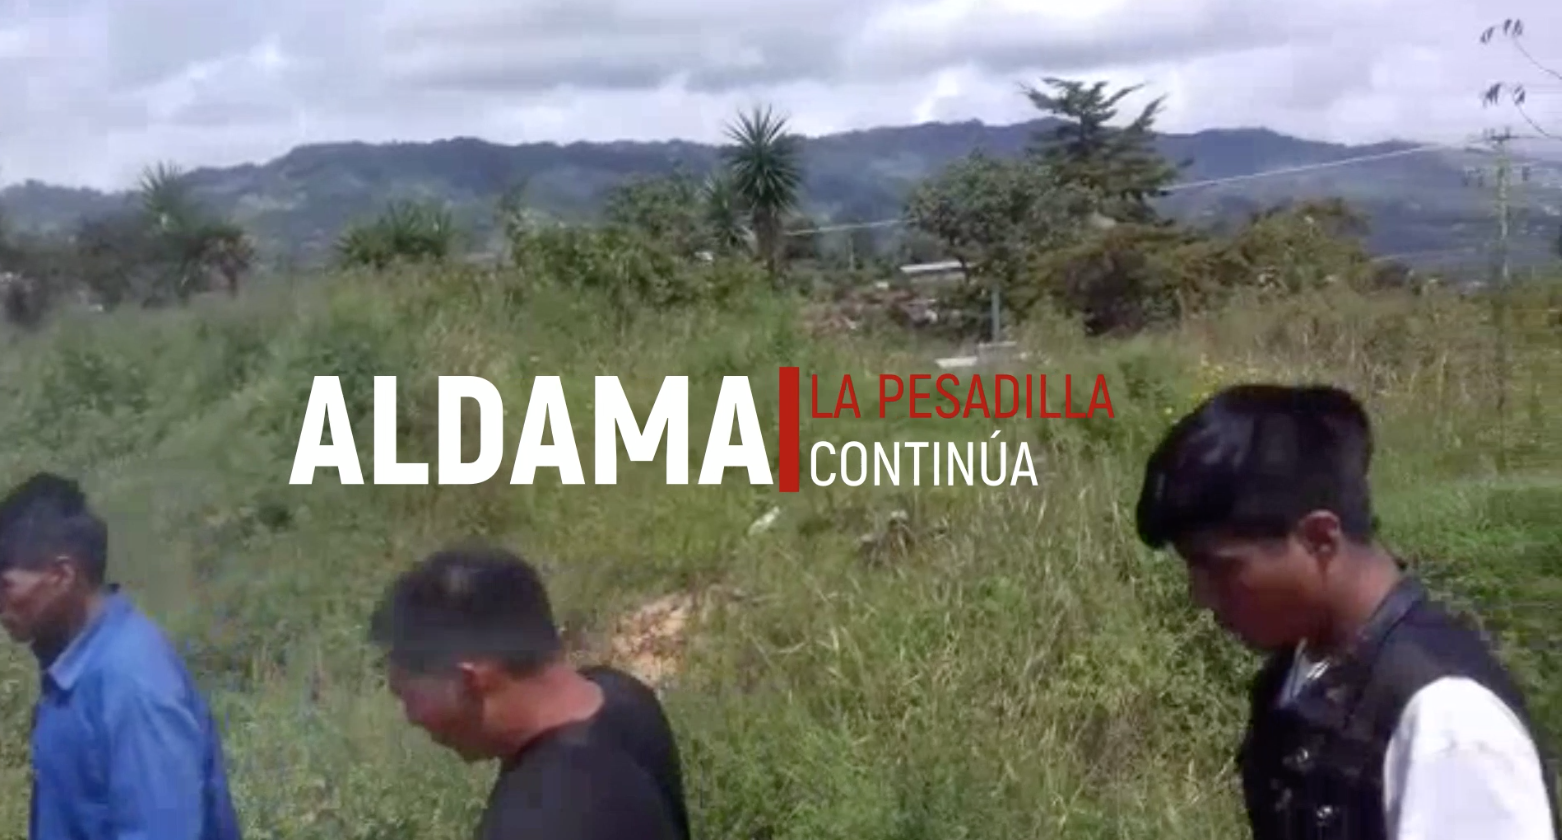 Aldama: la pesadilla continúa - Reportaje Especial